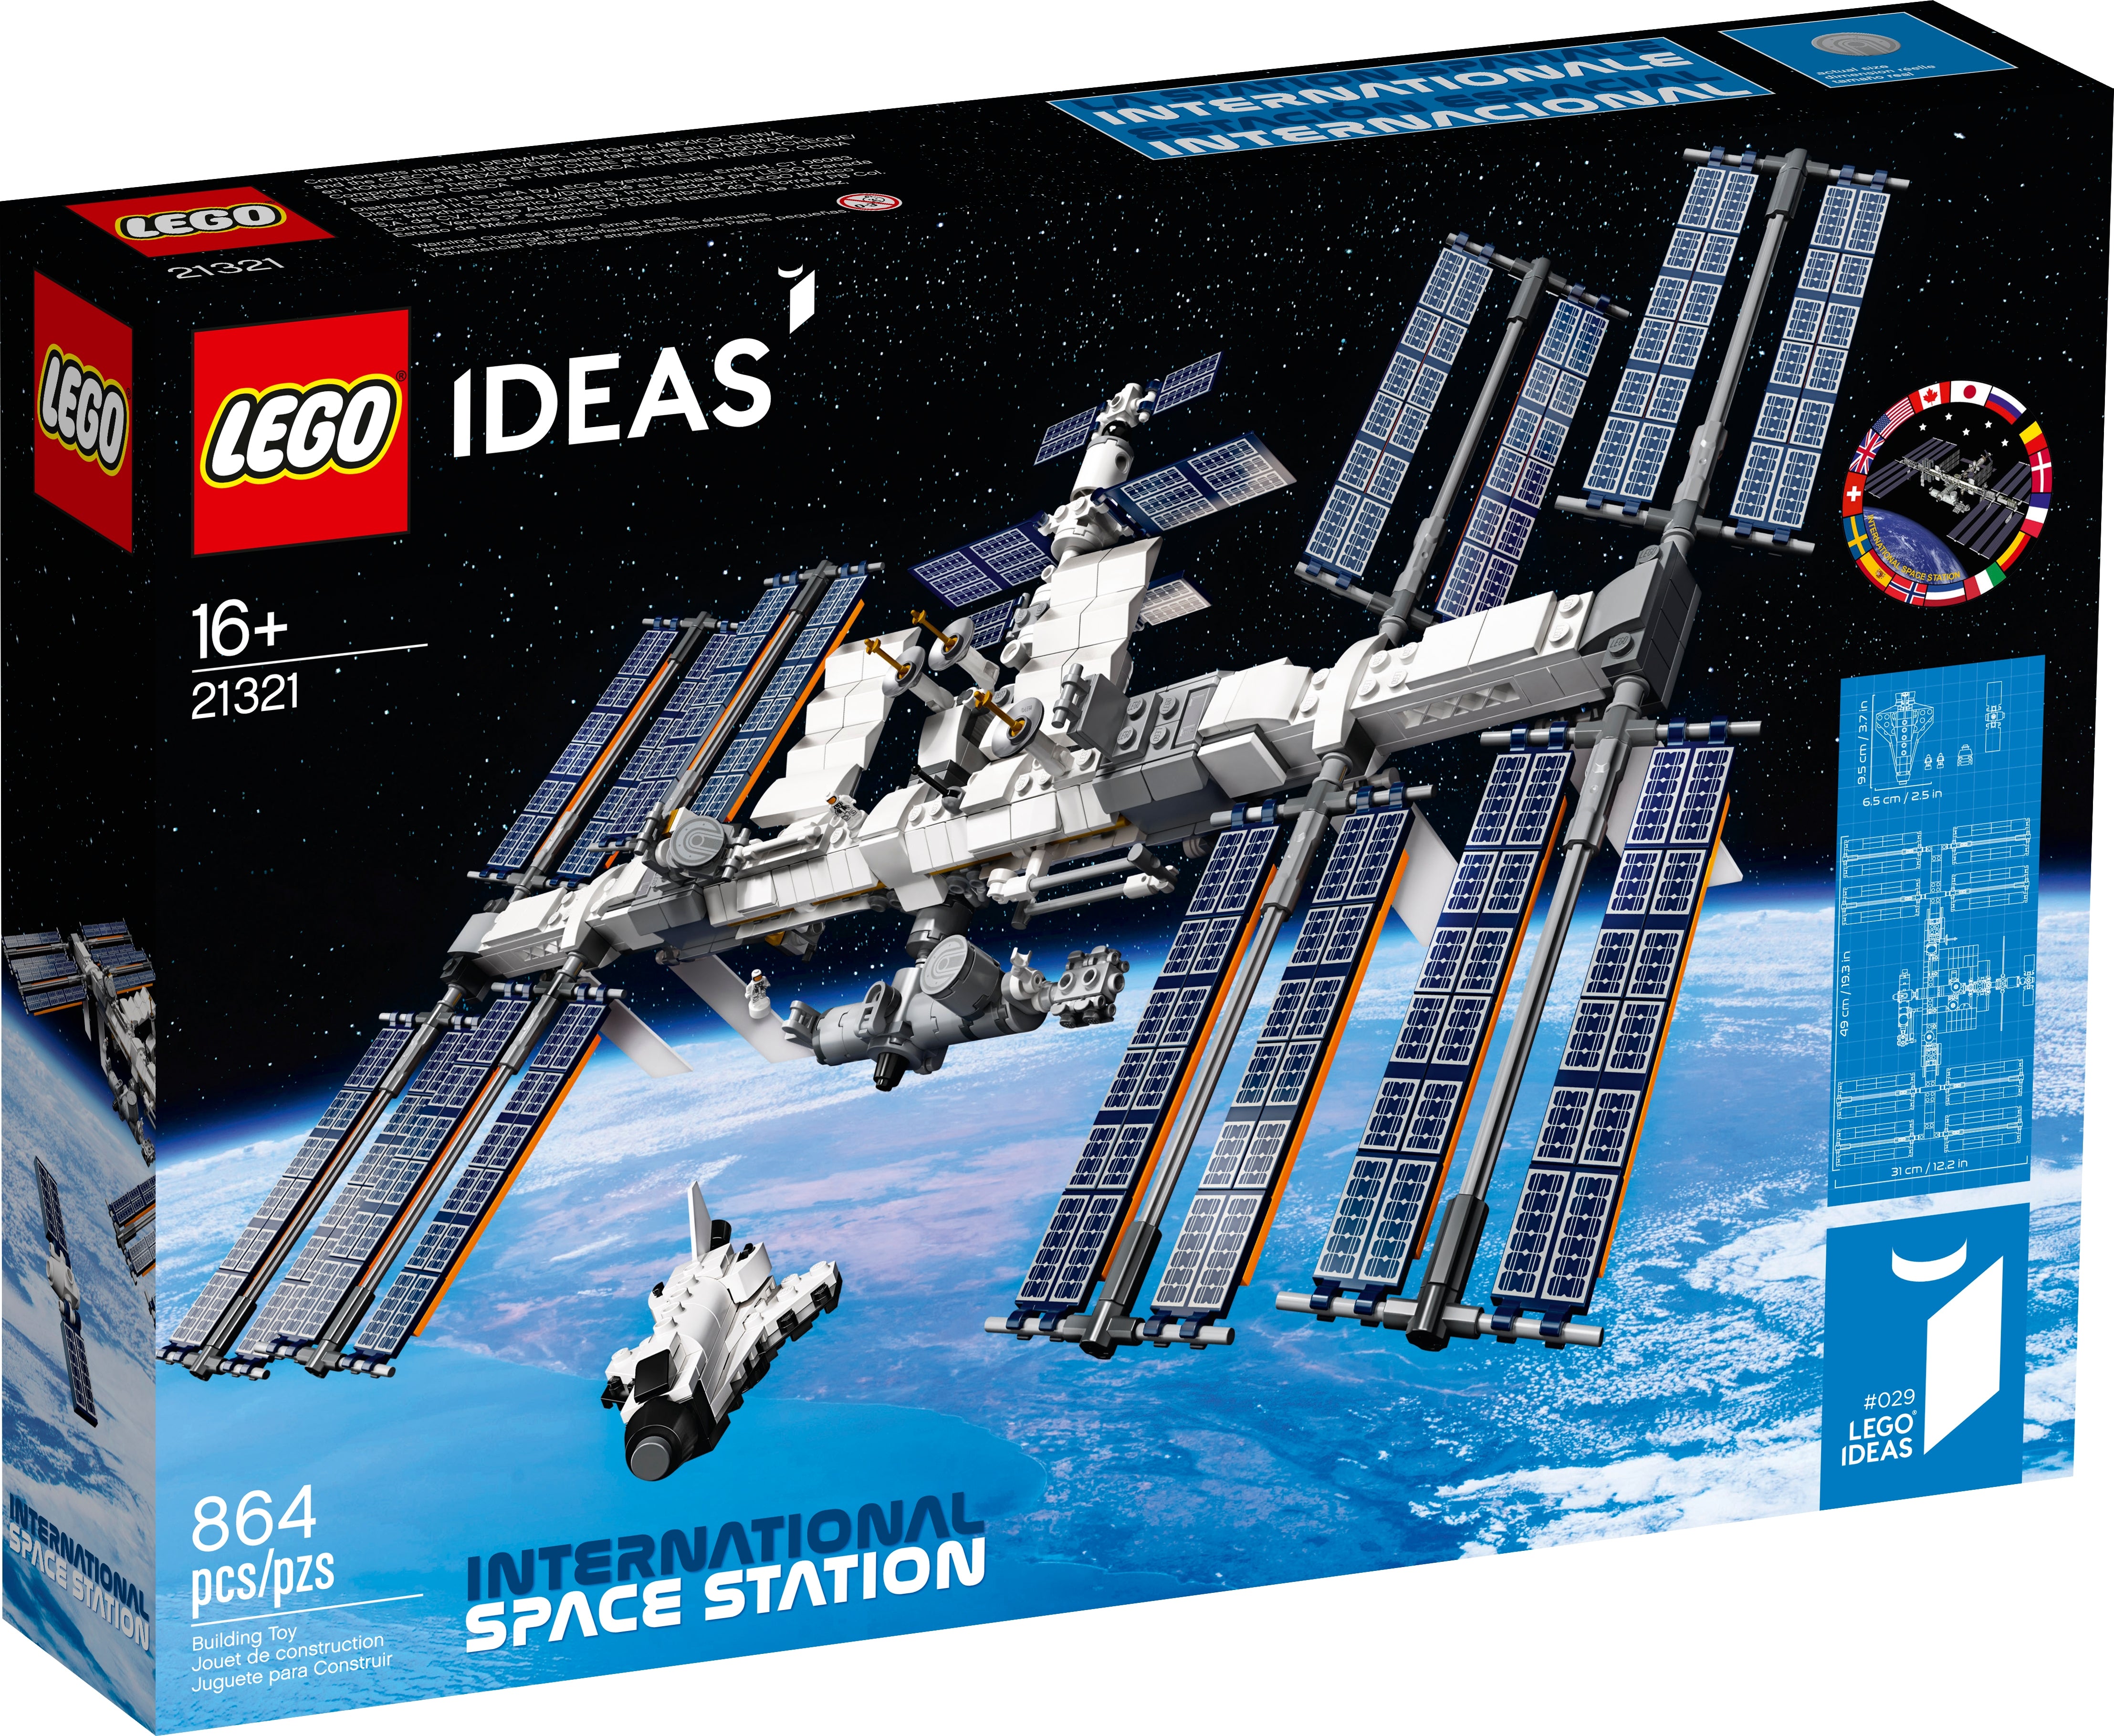 LEGO Ideas Internationale Raumstation (21321) - im GOLDSTIEN.SHOP verfügbar mit Gratisversand ab Schweizer Lager! (5702016719062)